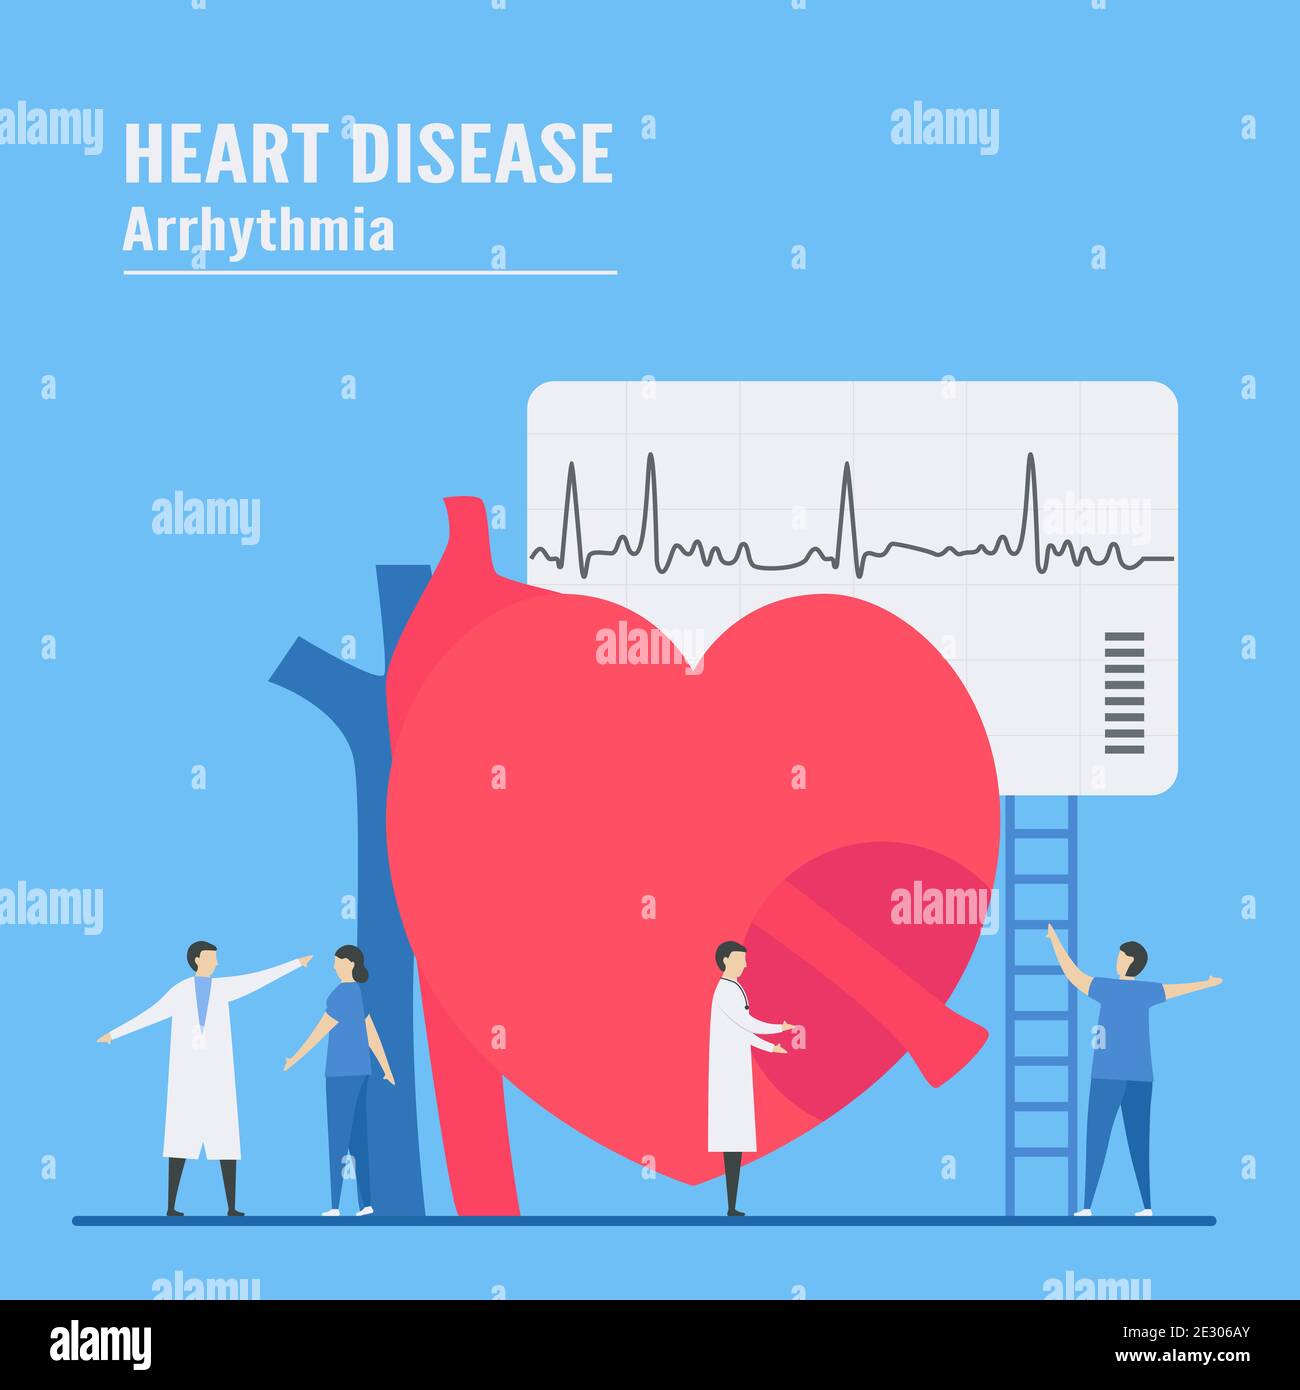 Kardiologische Vektorgrafiken. Dieses Problem der Herzerkrankung ist Arrhythmie. Diagnose und Analyse des Ausfallsystems des periodischen Signals. Stock Vektor